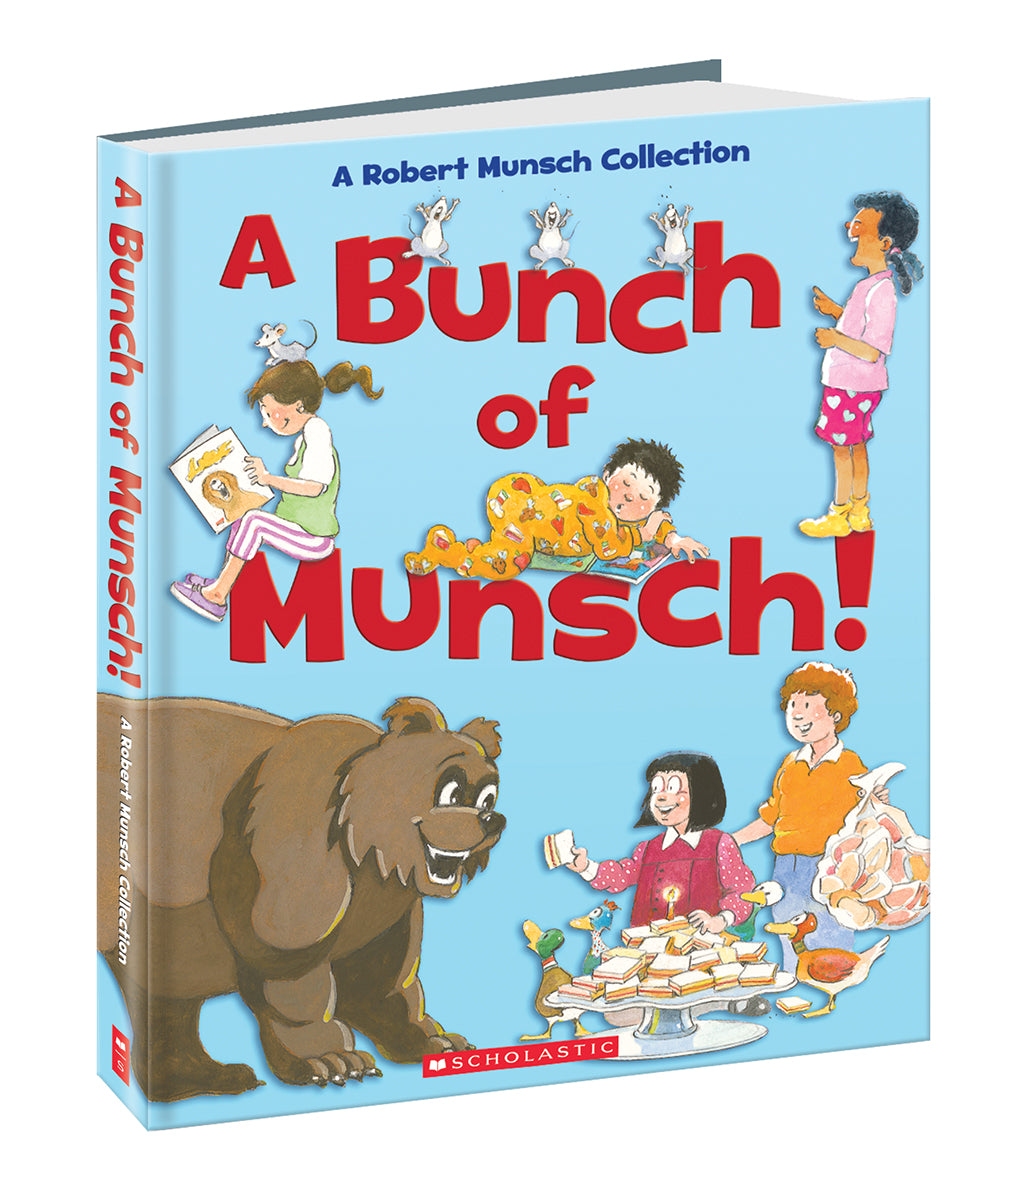 A Bunch of Munsch! (Six-book collection)